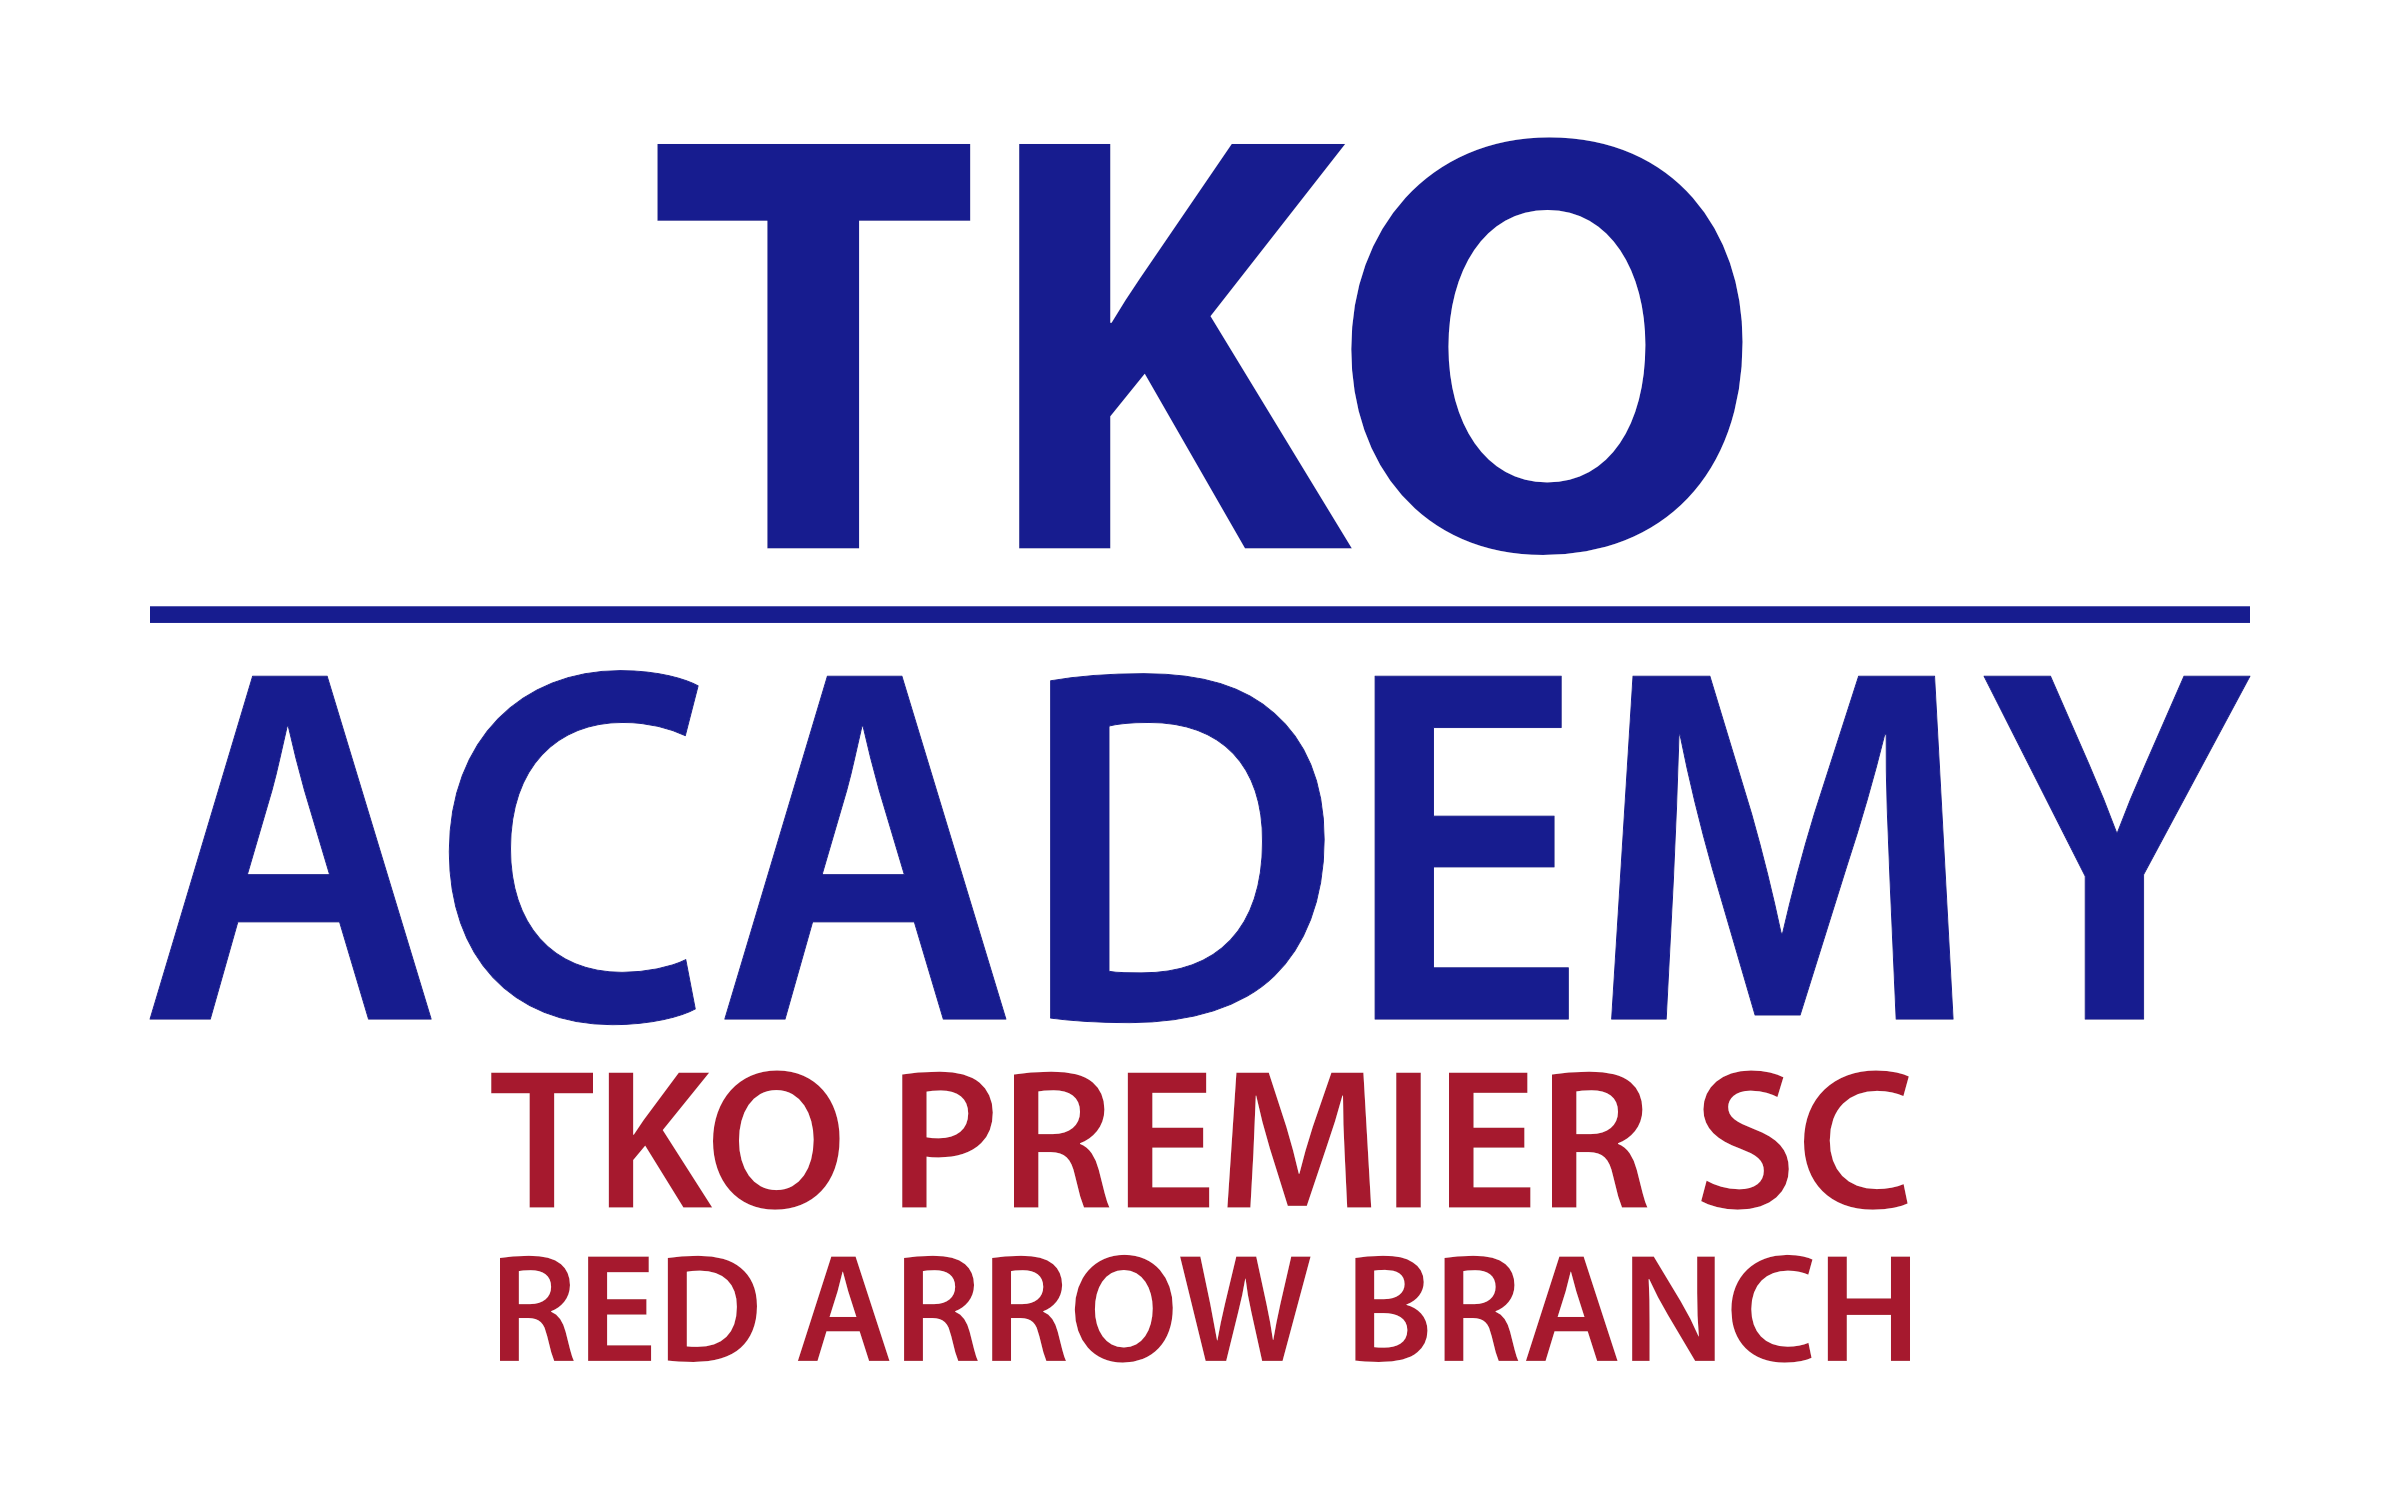 Premier Academy - Final - Red Arrow